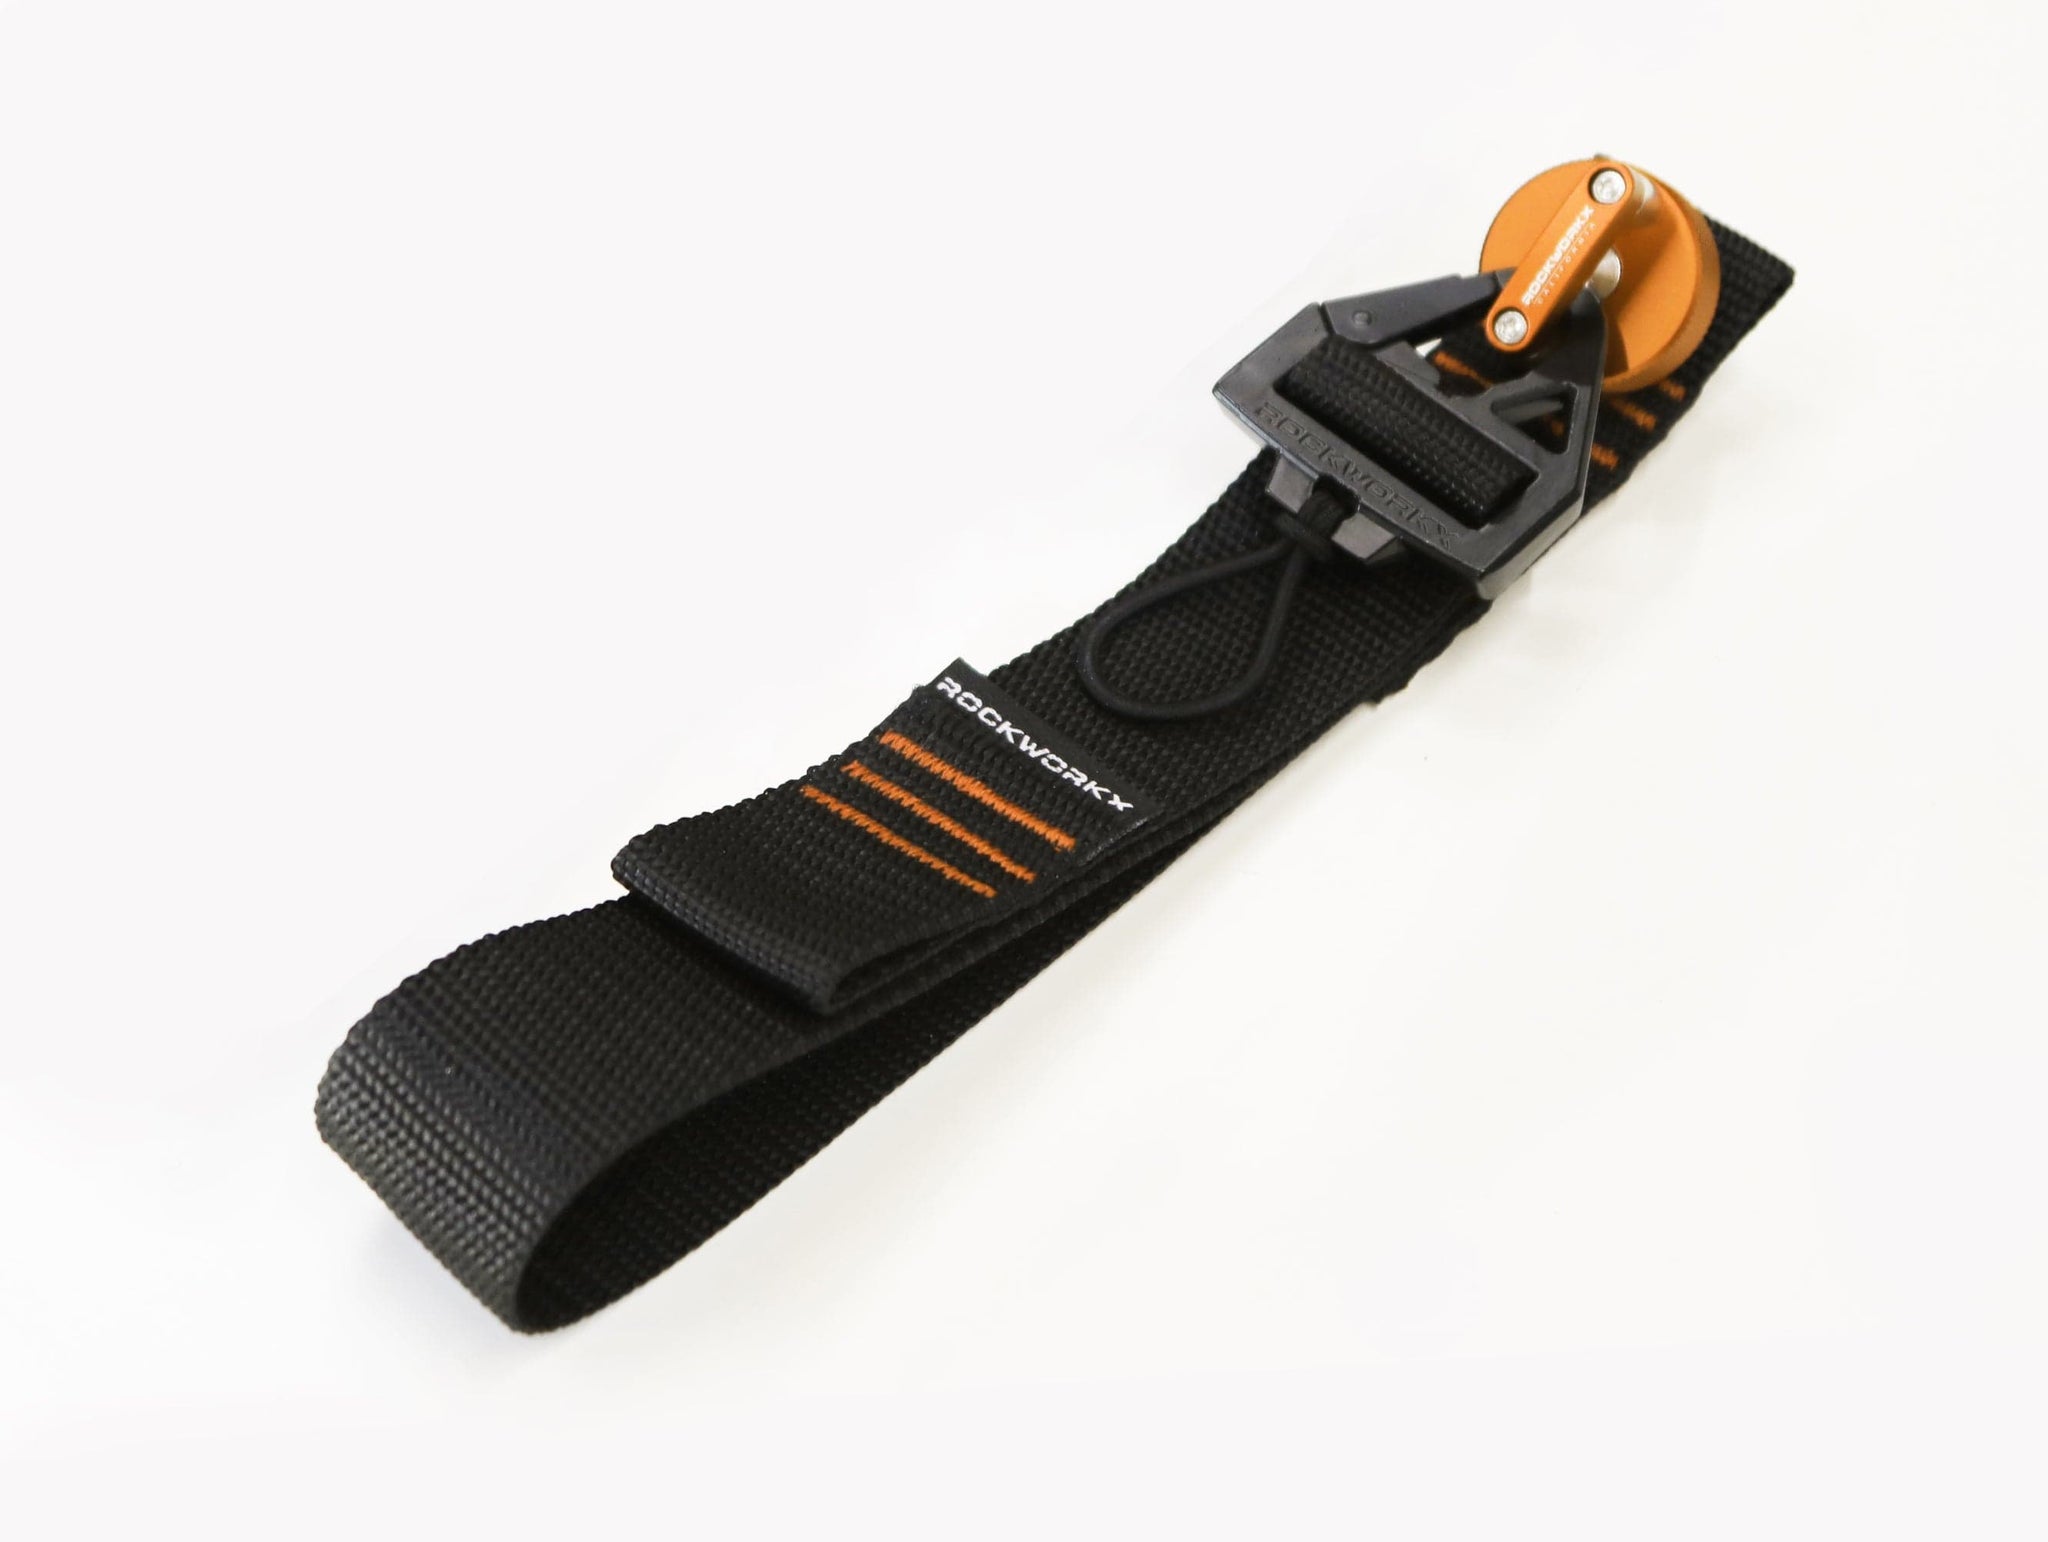 Gear strap with thumbscrew for 4 door Bronco B-Pillar rockworkx